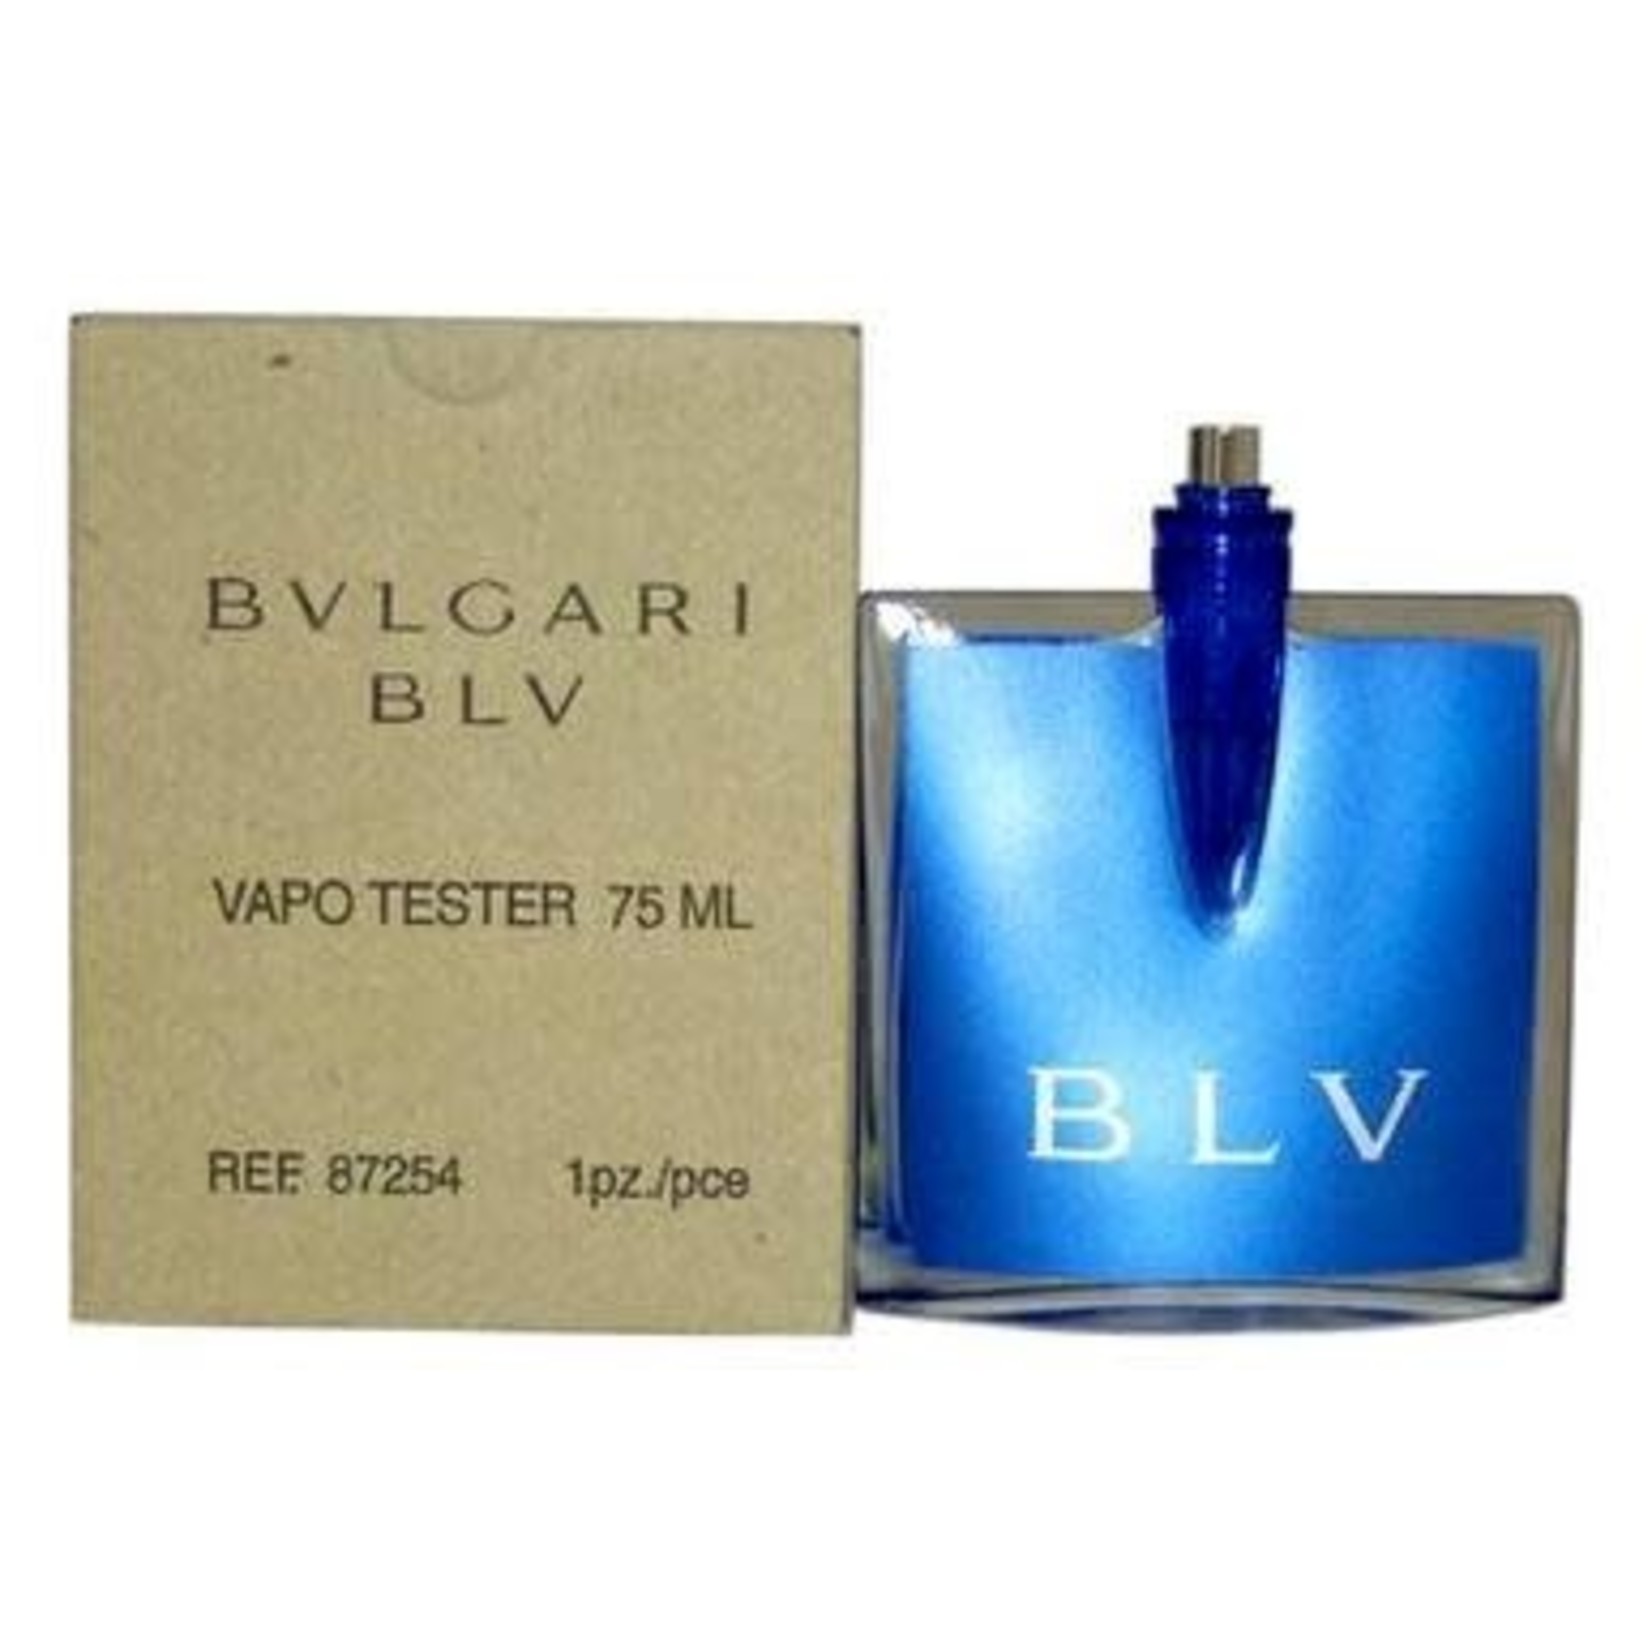 Bvlgari BLV for Women - Eau de Parfum